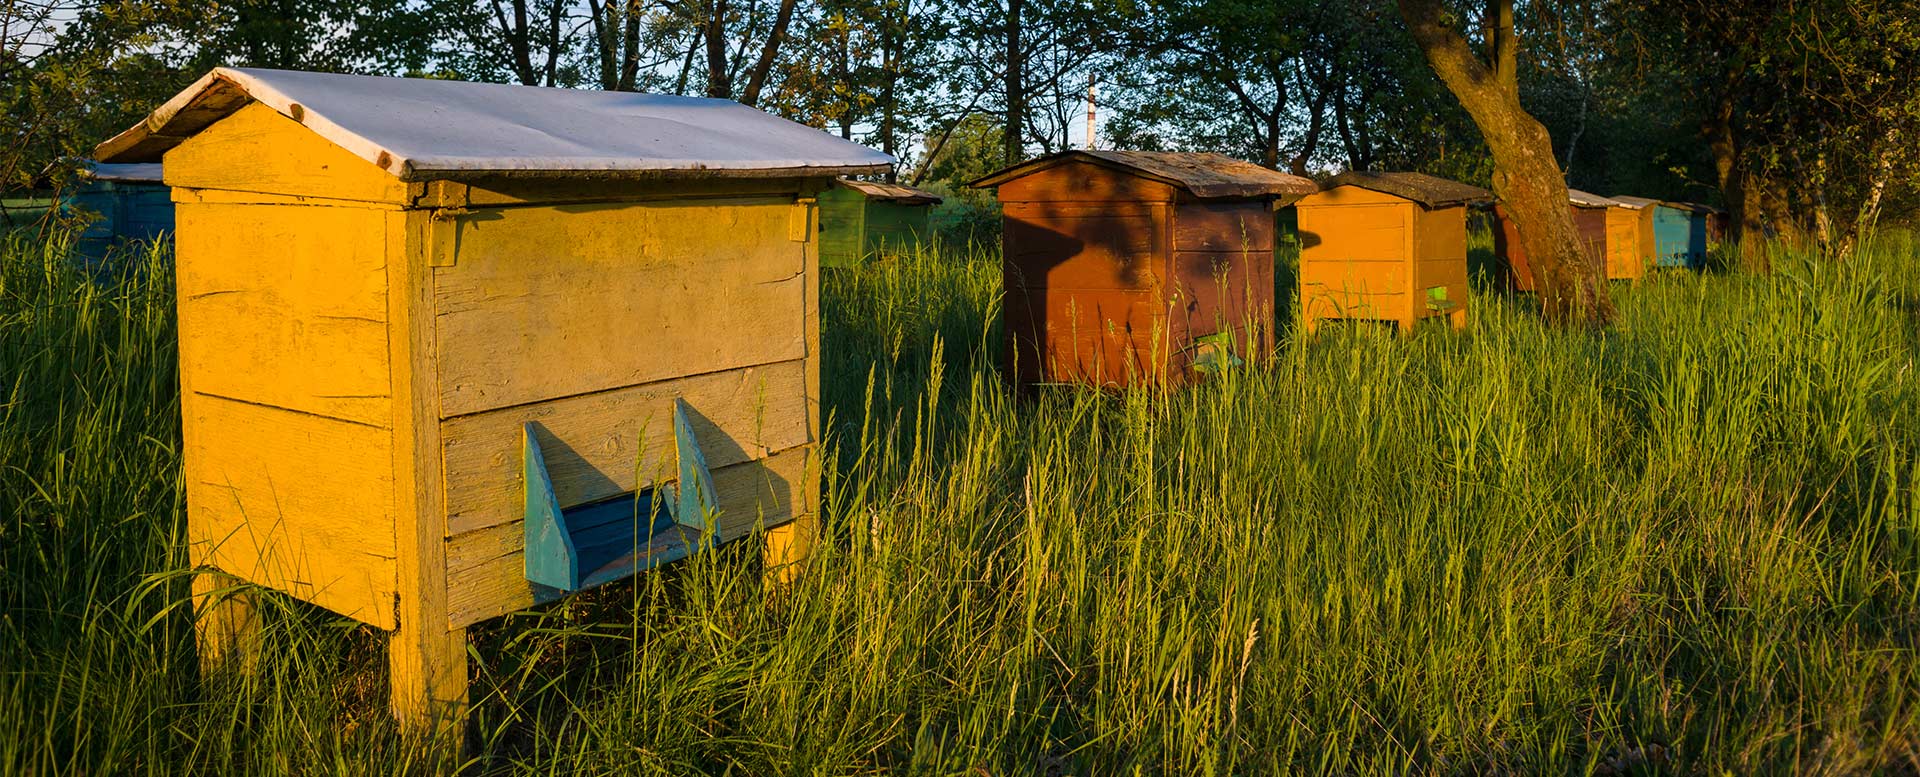 Bienenkästen zur Bienenhaltung